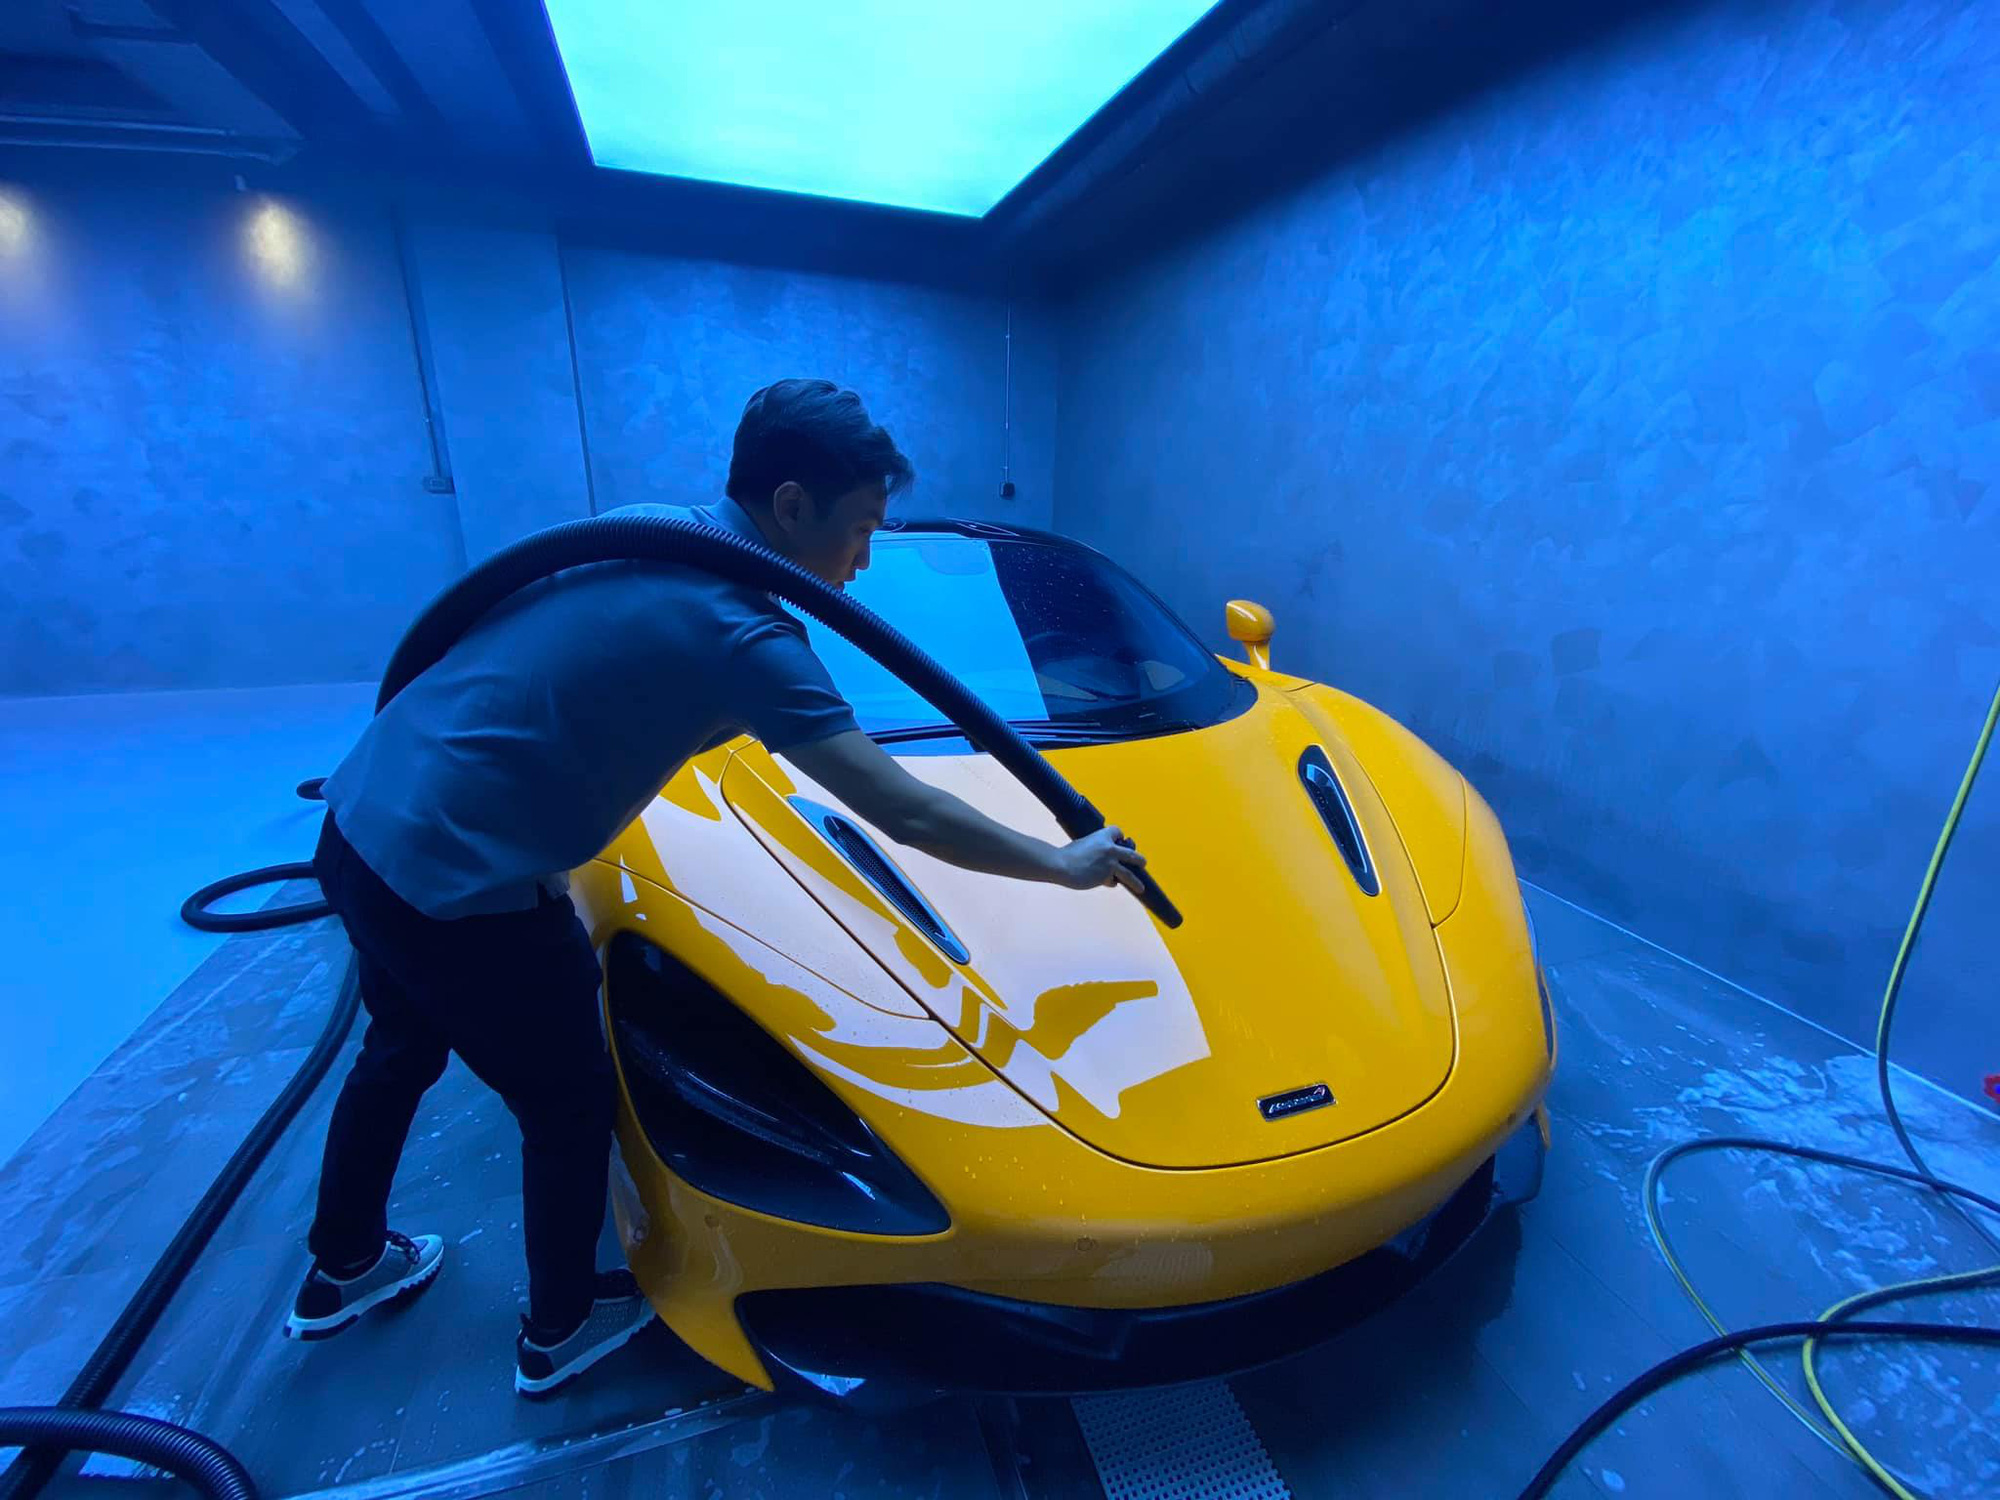 Xem doanh nhân Nguyễn Quốc Cường tự rửa siêu xe McLaren trong garage bạc tỷ, lên ảnh như nước ngoài - Ảnh 1.